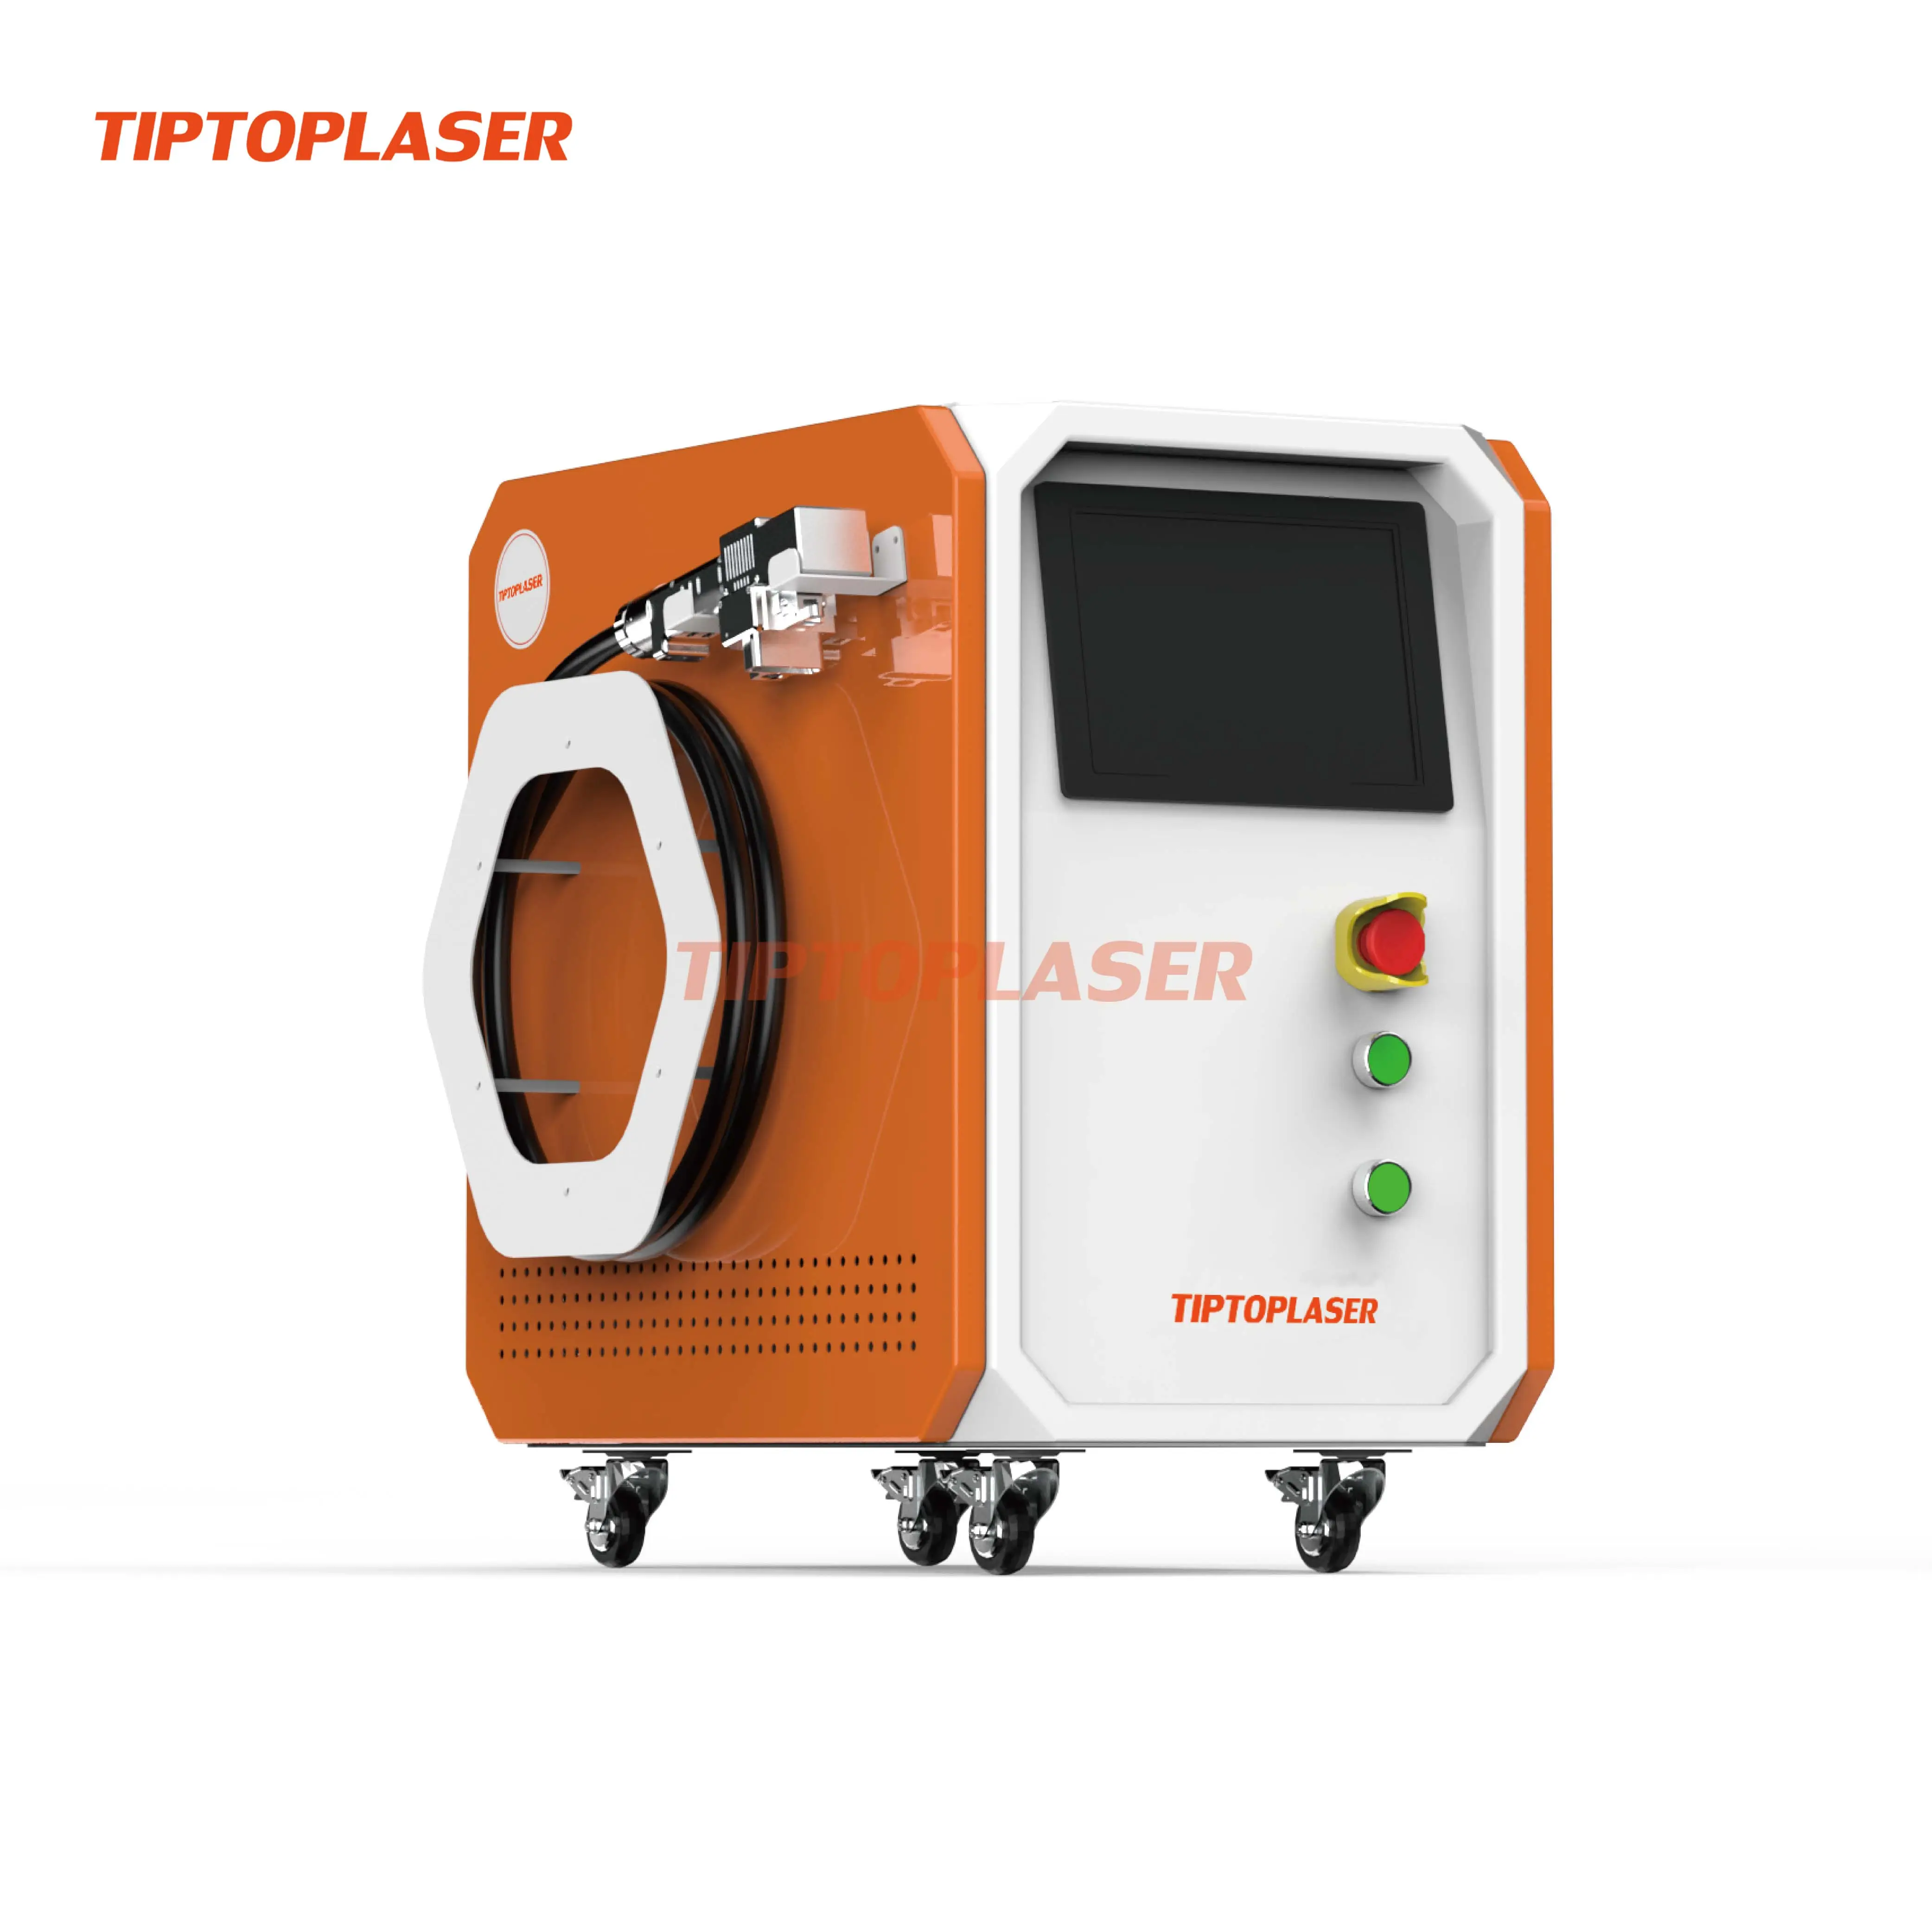 Nouveau produit! Machine de nettoyage laser à refroidissement par air 1500W nettoyeur portable à main laser antirouille 53kg tiptolaser antirouille